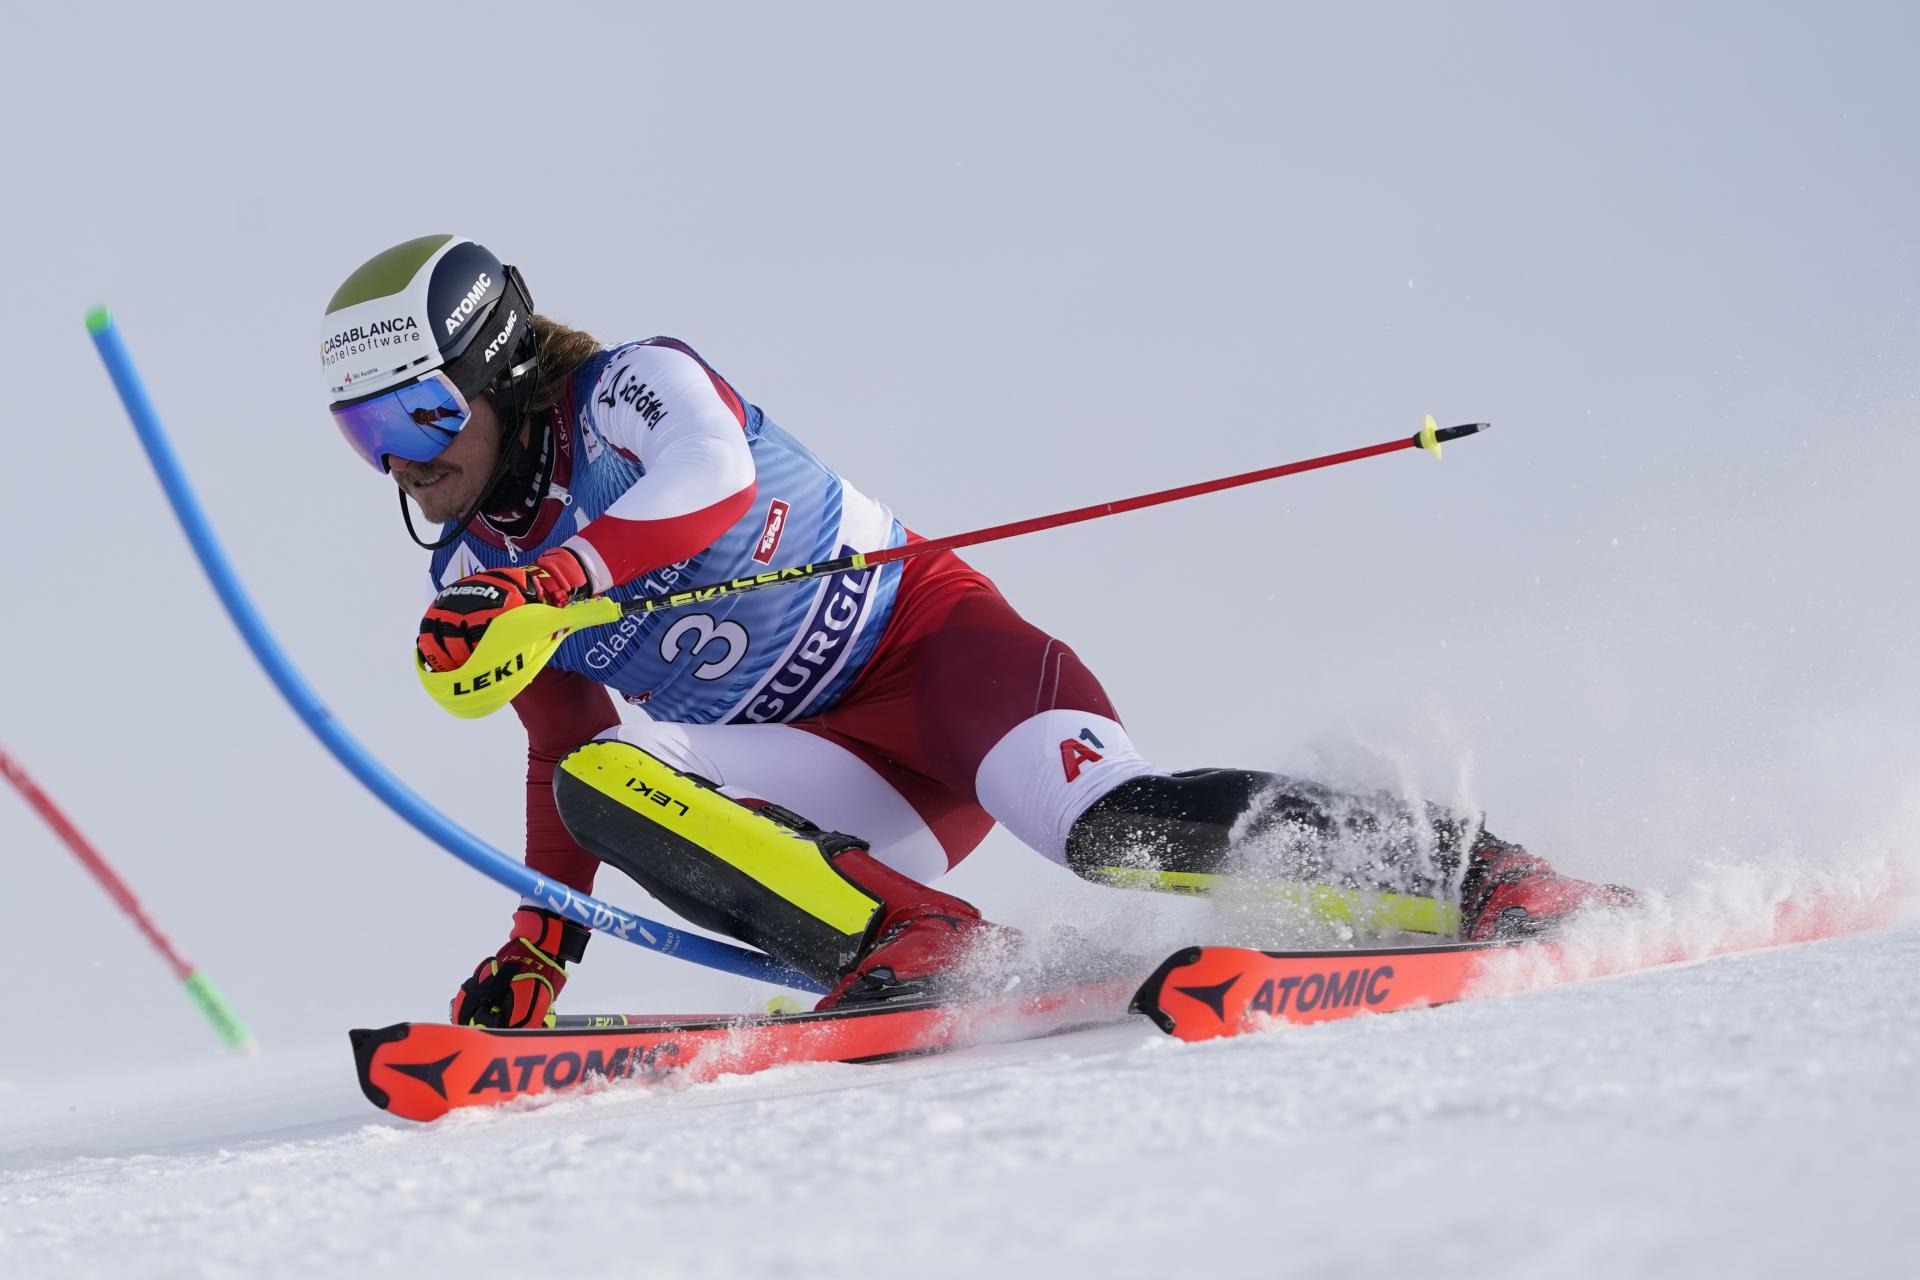 Rakúski lyžiari obsadili v Gurgeli kompletné stupne víťazov, vyhral Feller